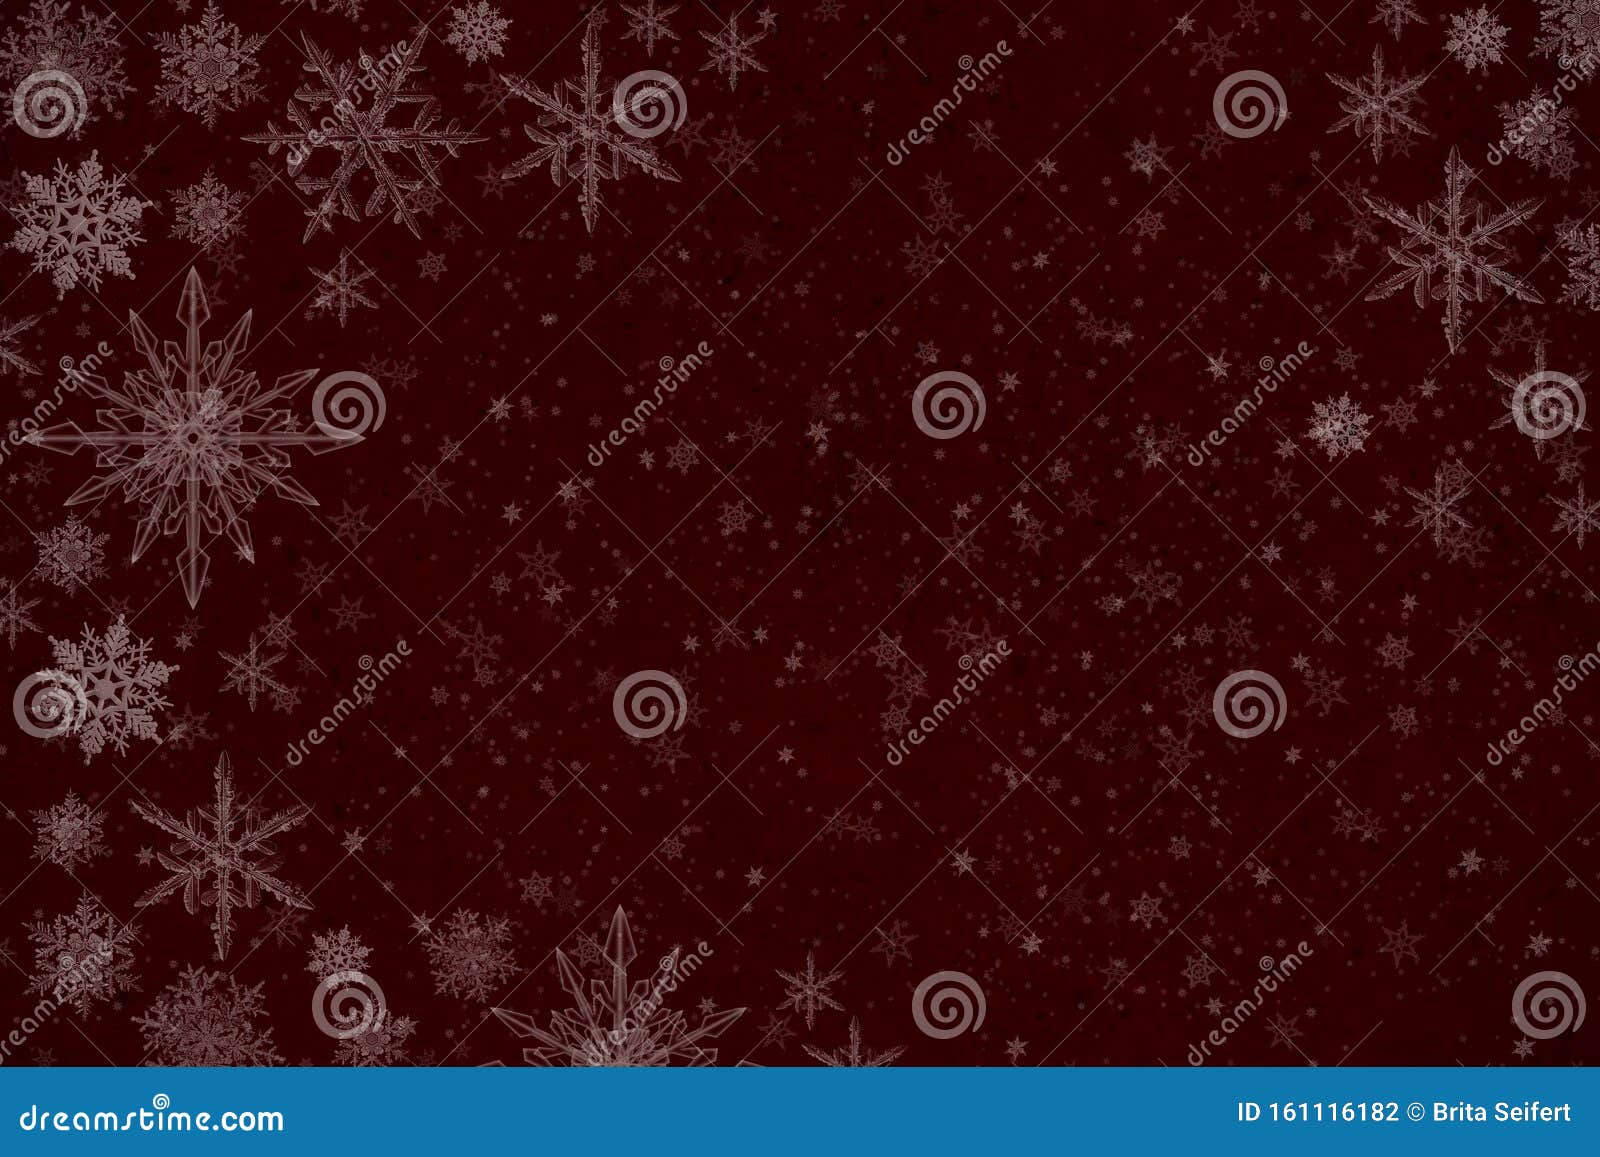 红冬背景 雪花 库存照片 图片包括有蓝色 焕发 例证 设计 概念 装饰 图象 节假日